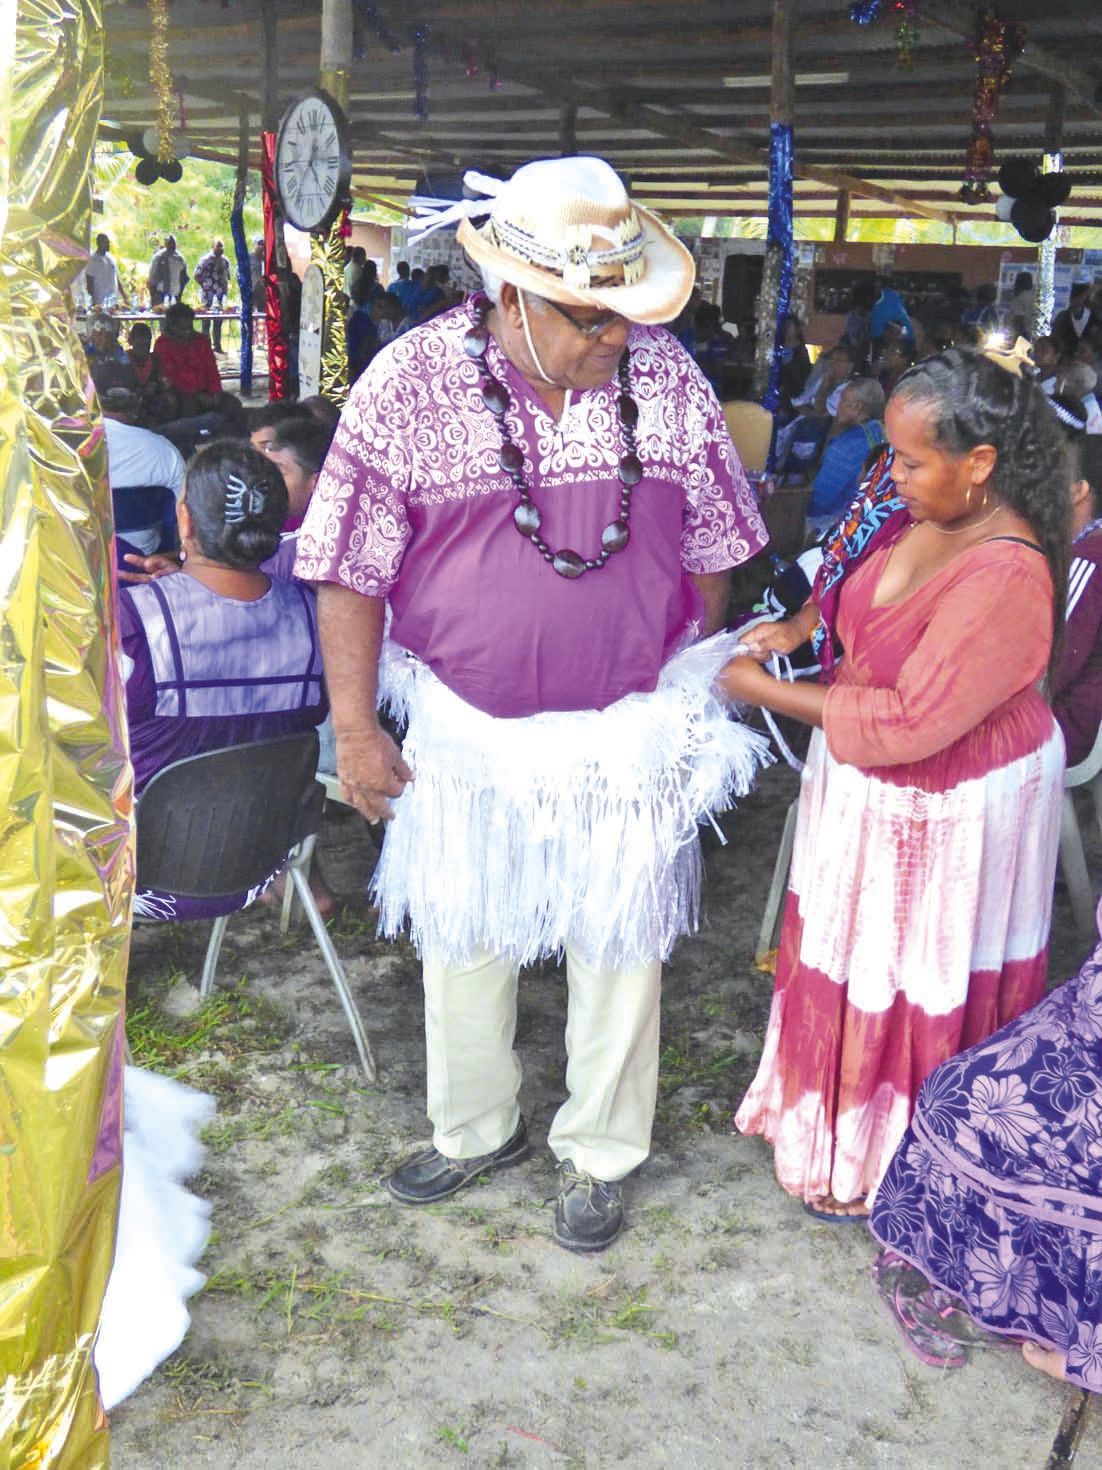 Les descendants de Fidji se sont vus paré d’ornements  traditionnels.